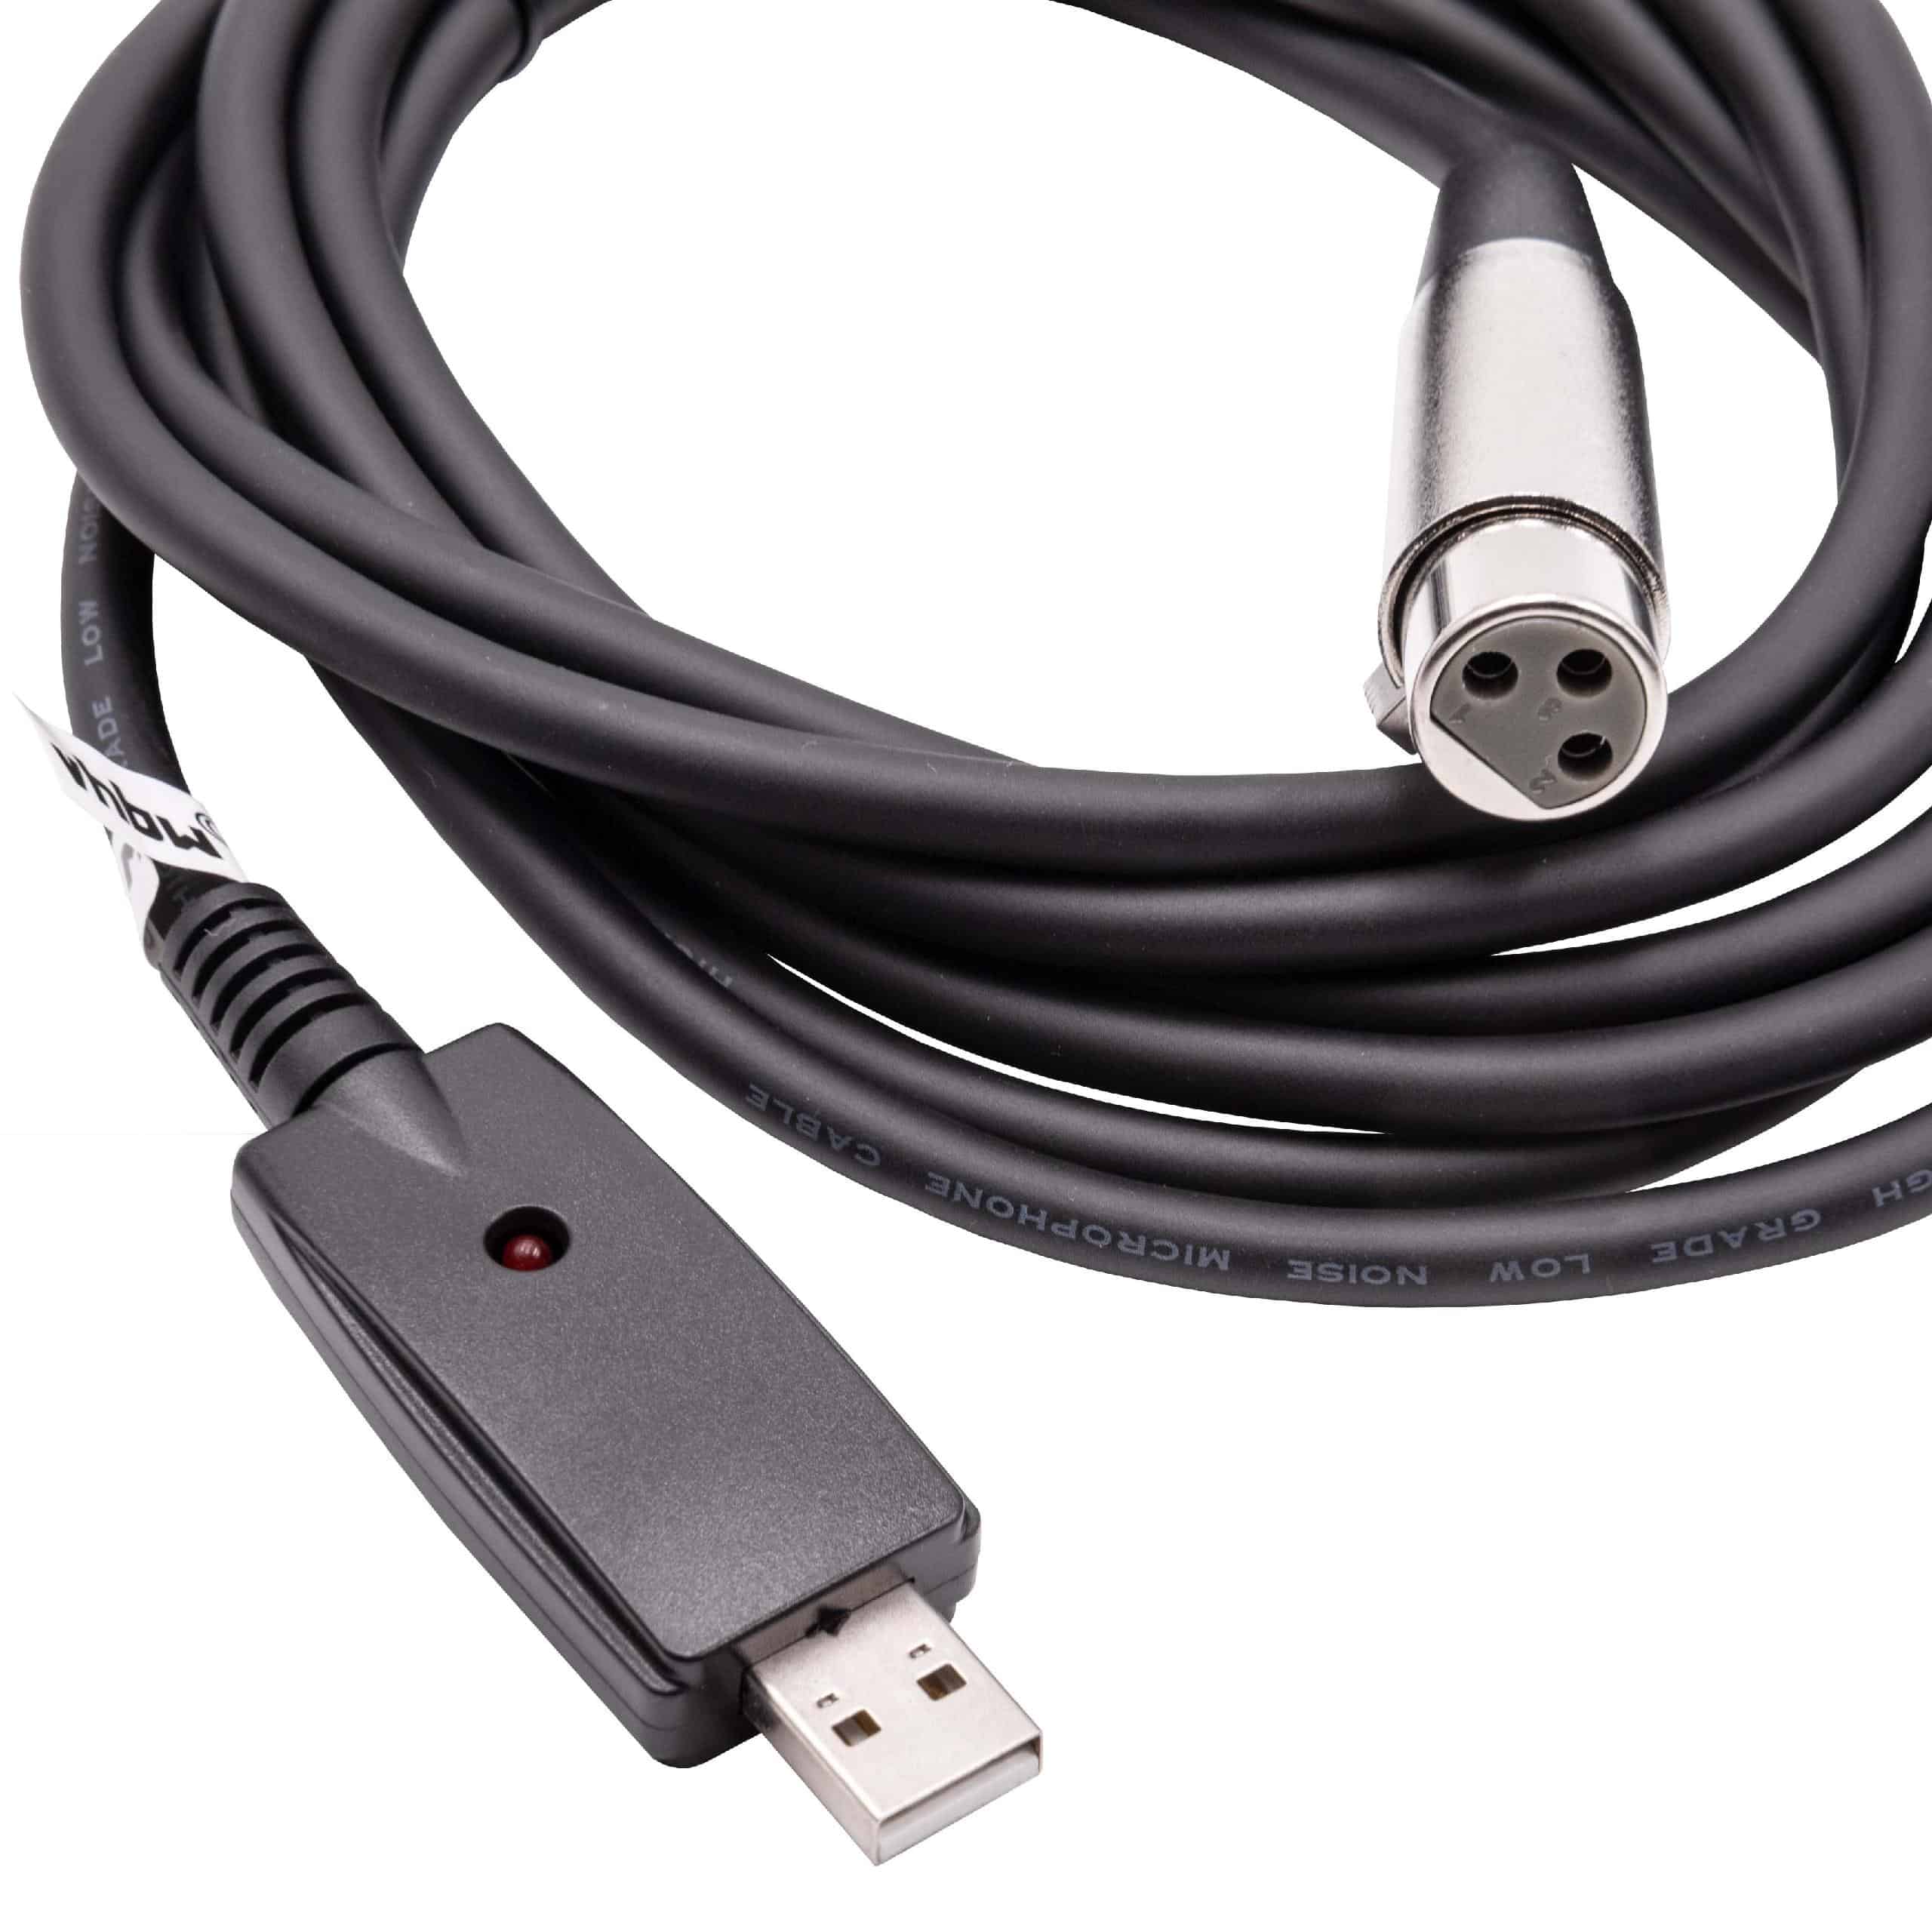 vhbw Cable adaptador USB 2.0 a clavija hembra XLR 3 pines - 2,8 m Cable de audio, cable de micrófono, cable US